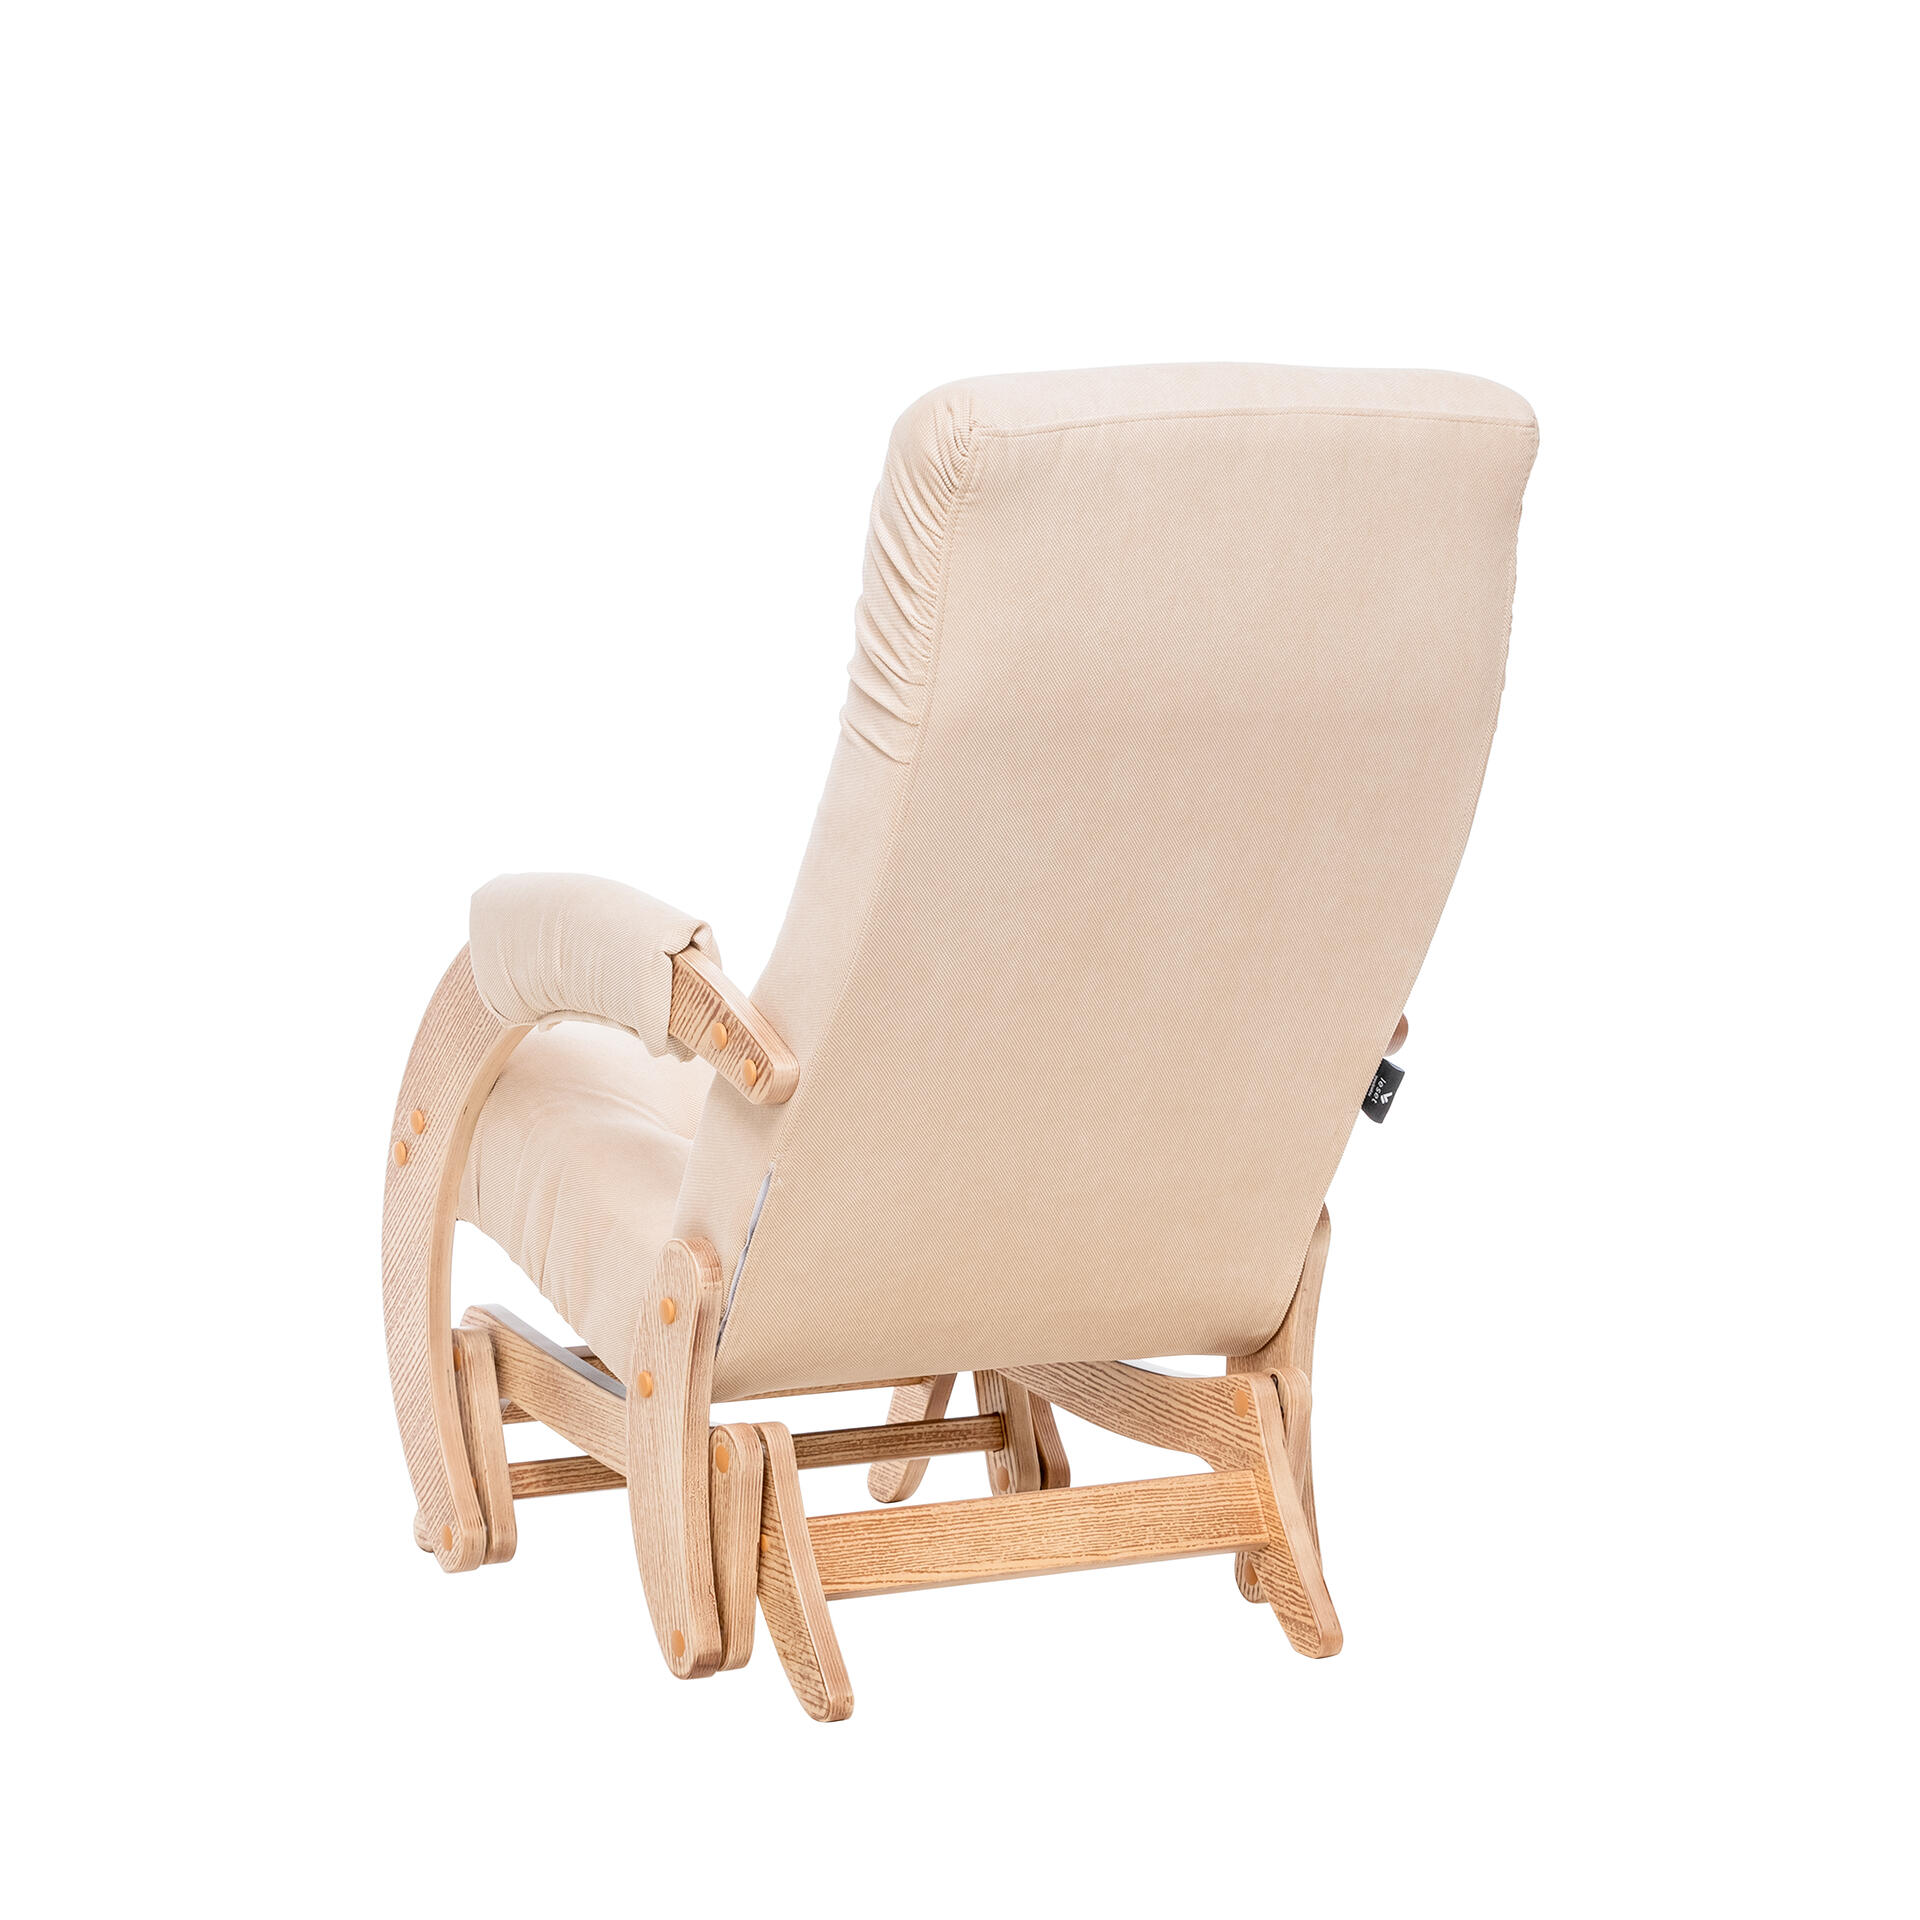 Кресло-глайдер модель 68